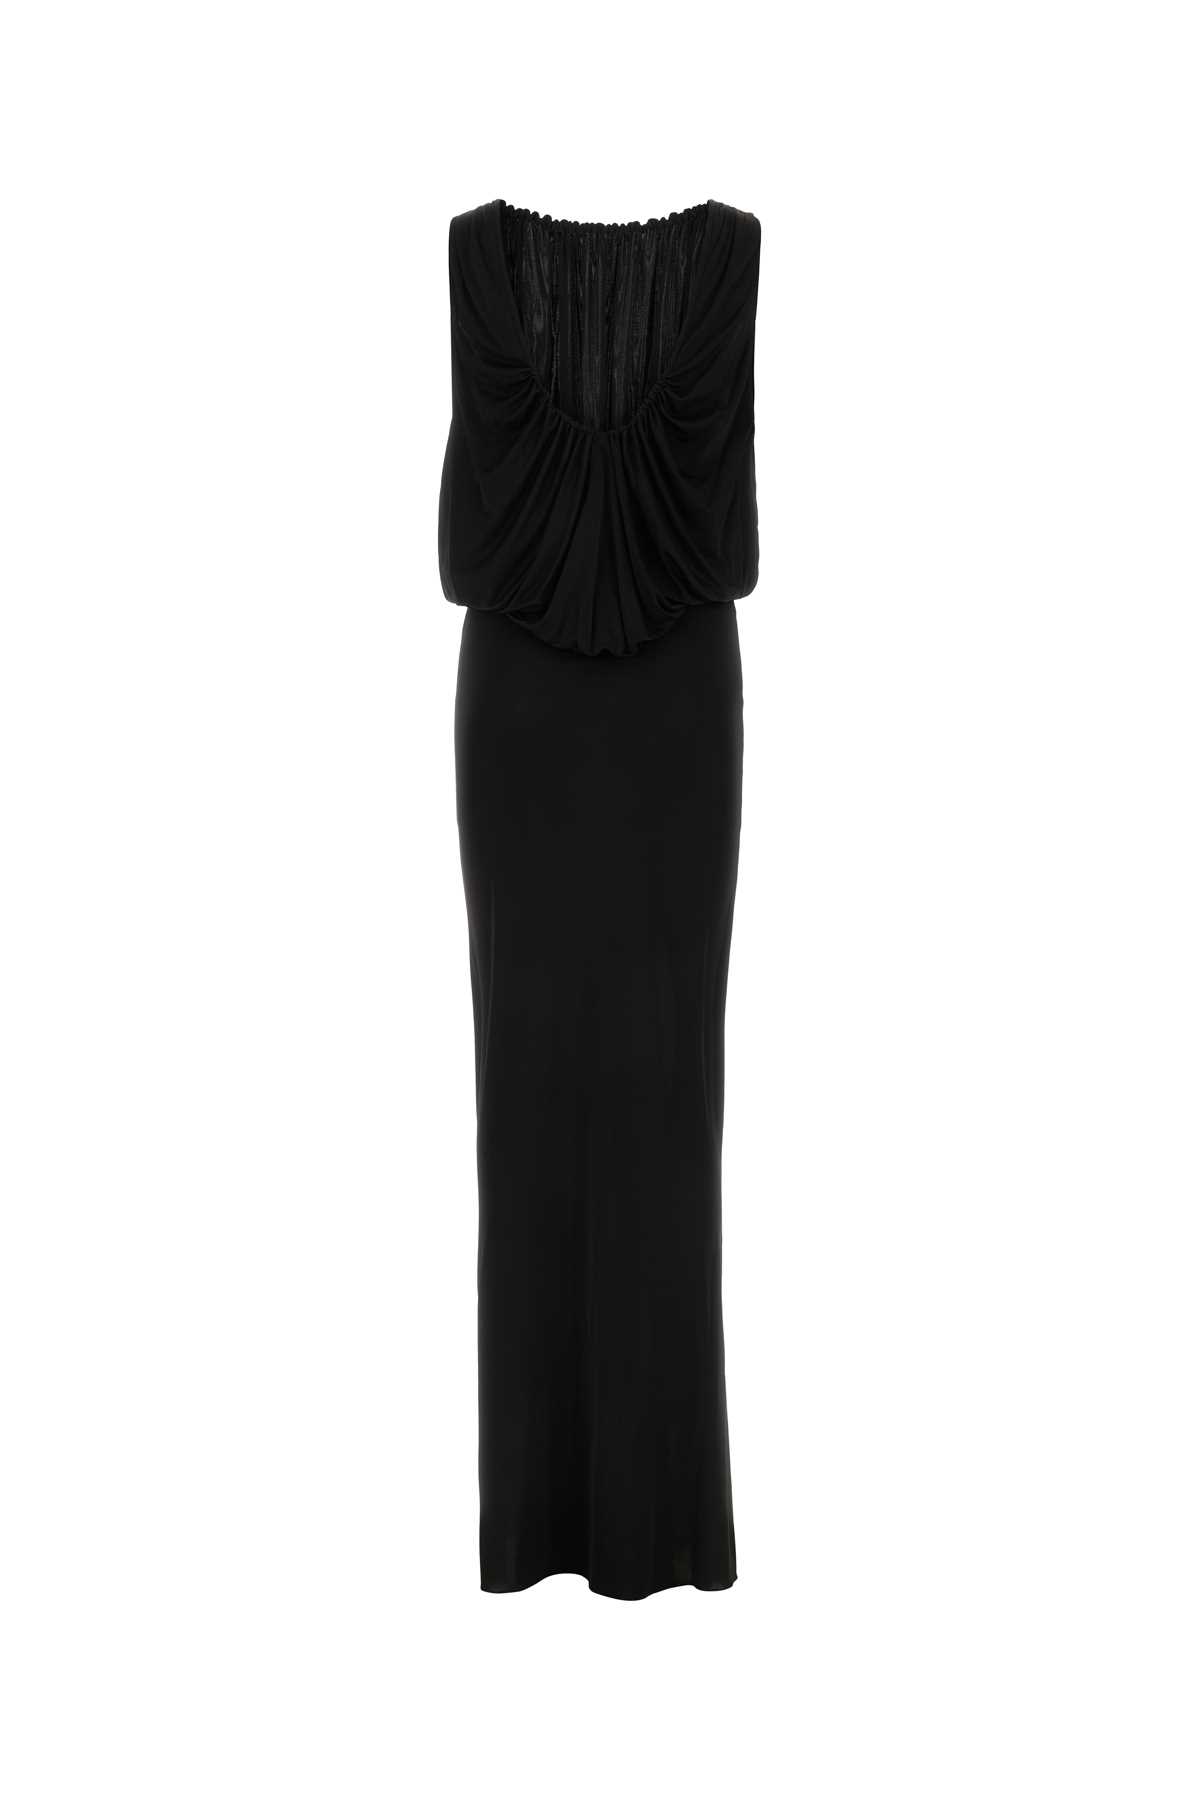 Saint Laurent Black Jersey Long Dress